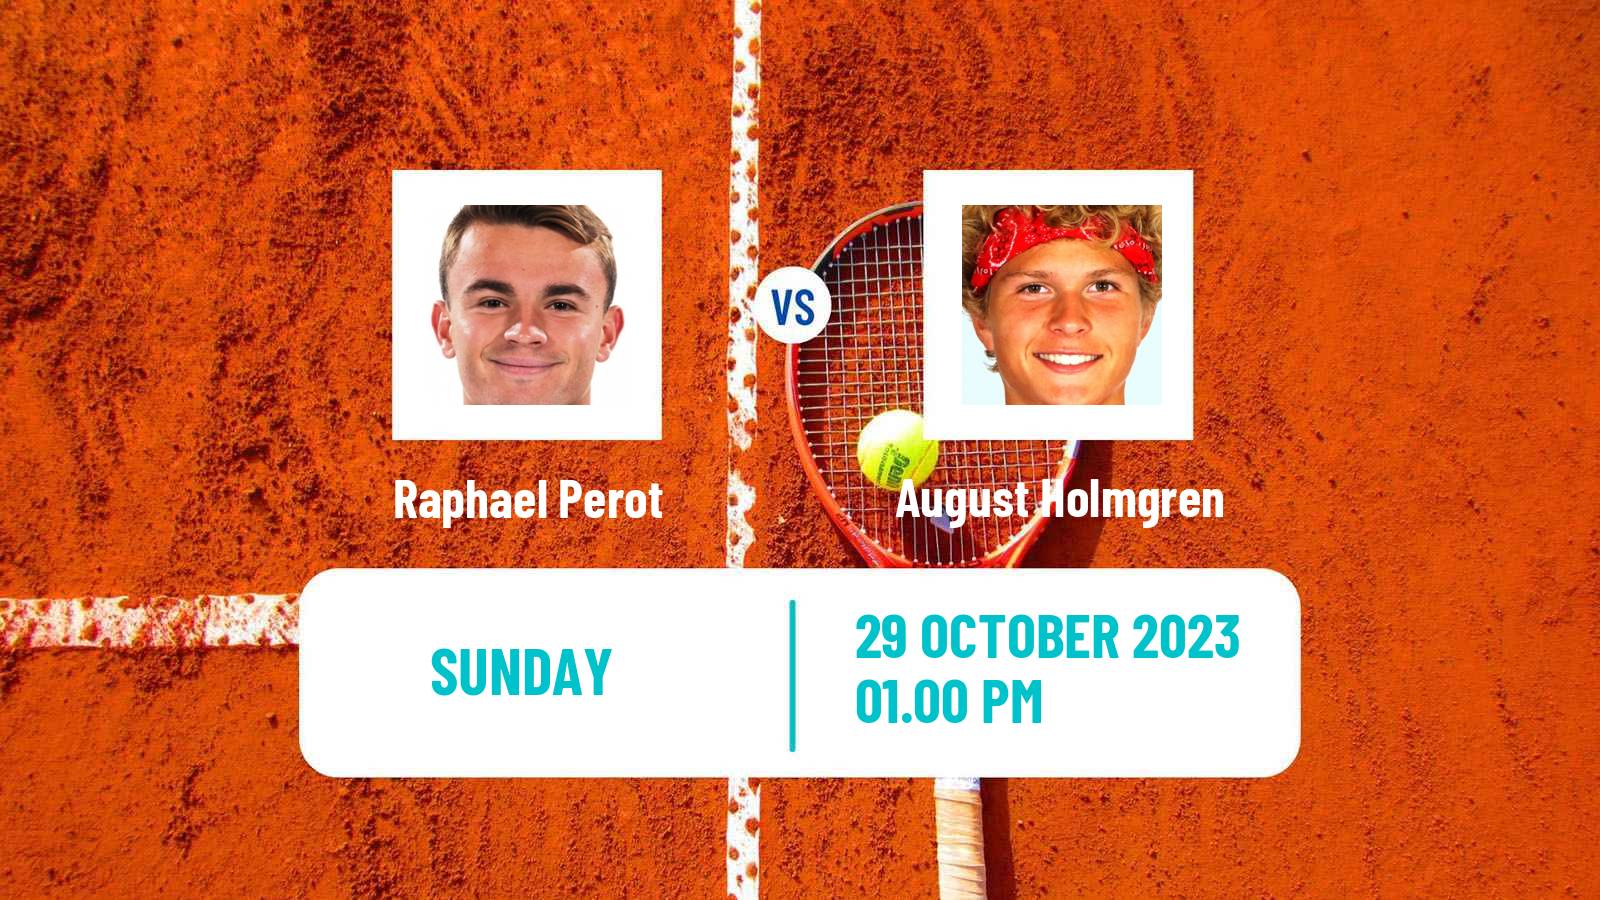 Tennis ITF M25 Harlingen Tx Men Raphael Perot - August Holmgren